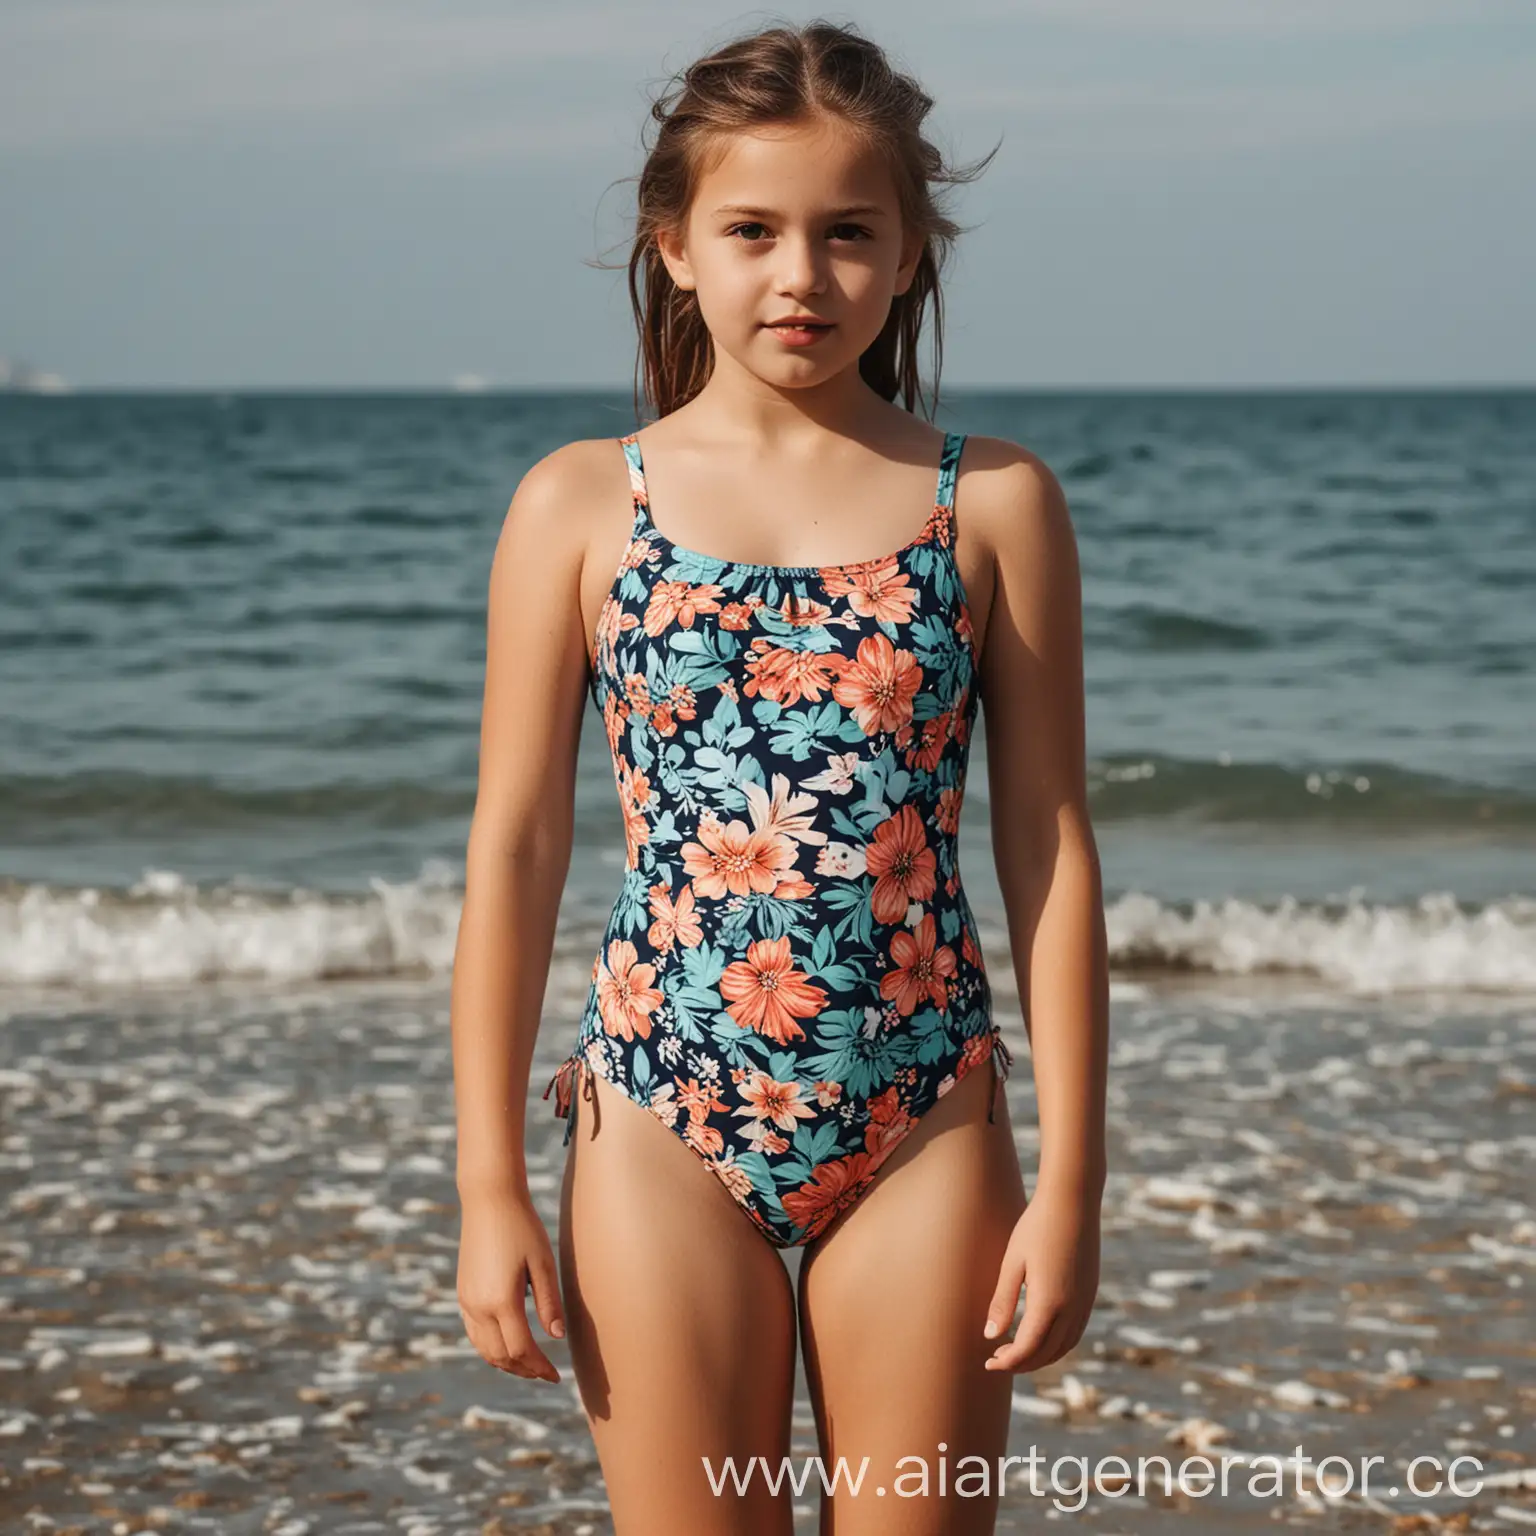 Девочка с фотографии стоит на берегу моря в купальнике